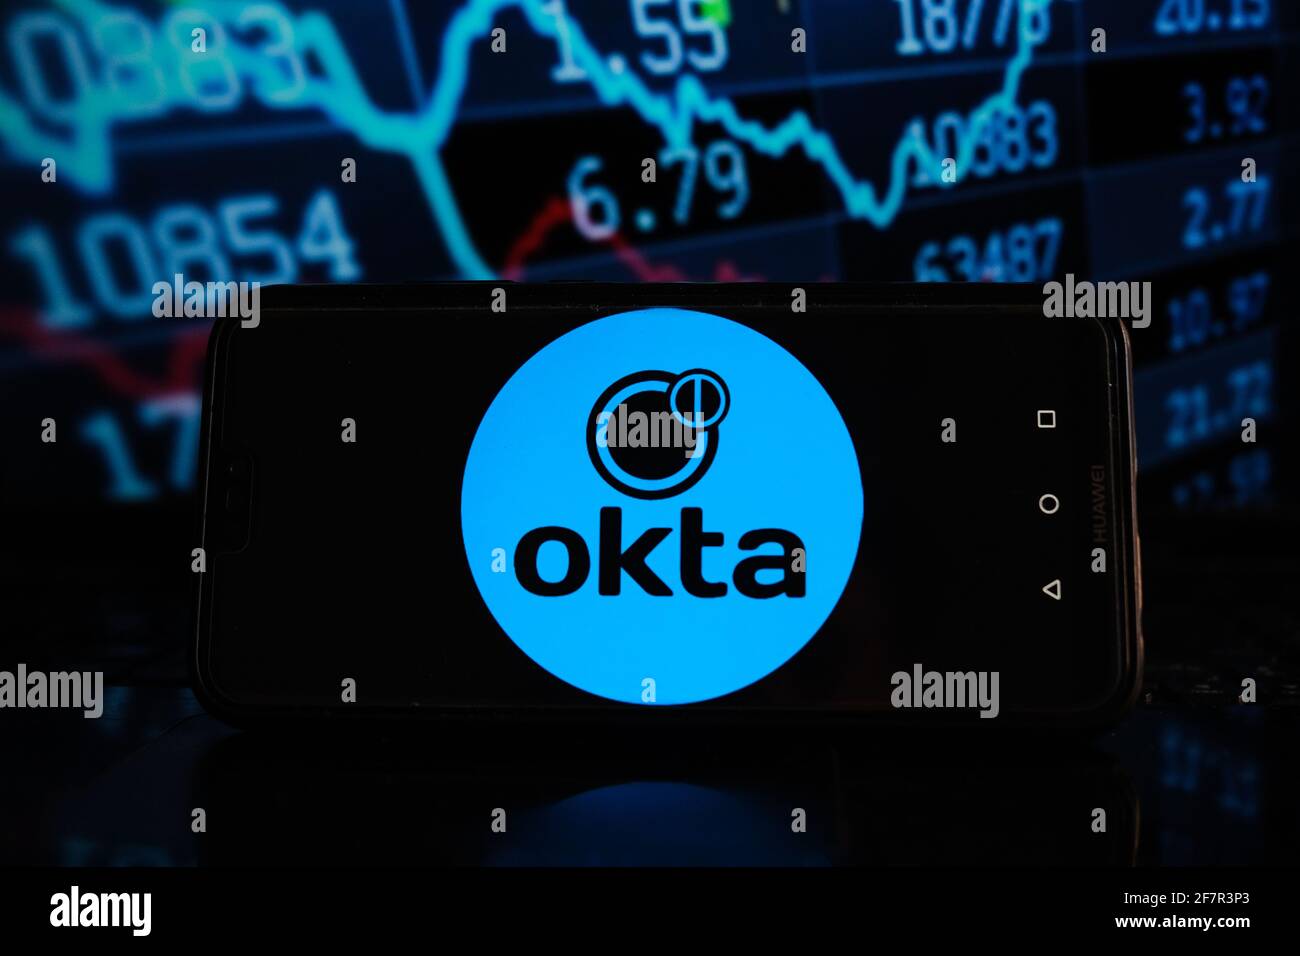 Okta share price